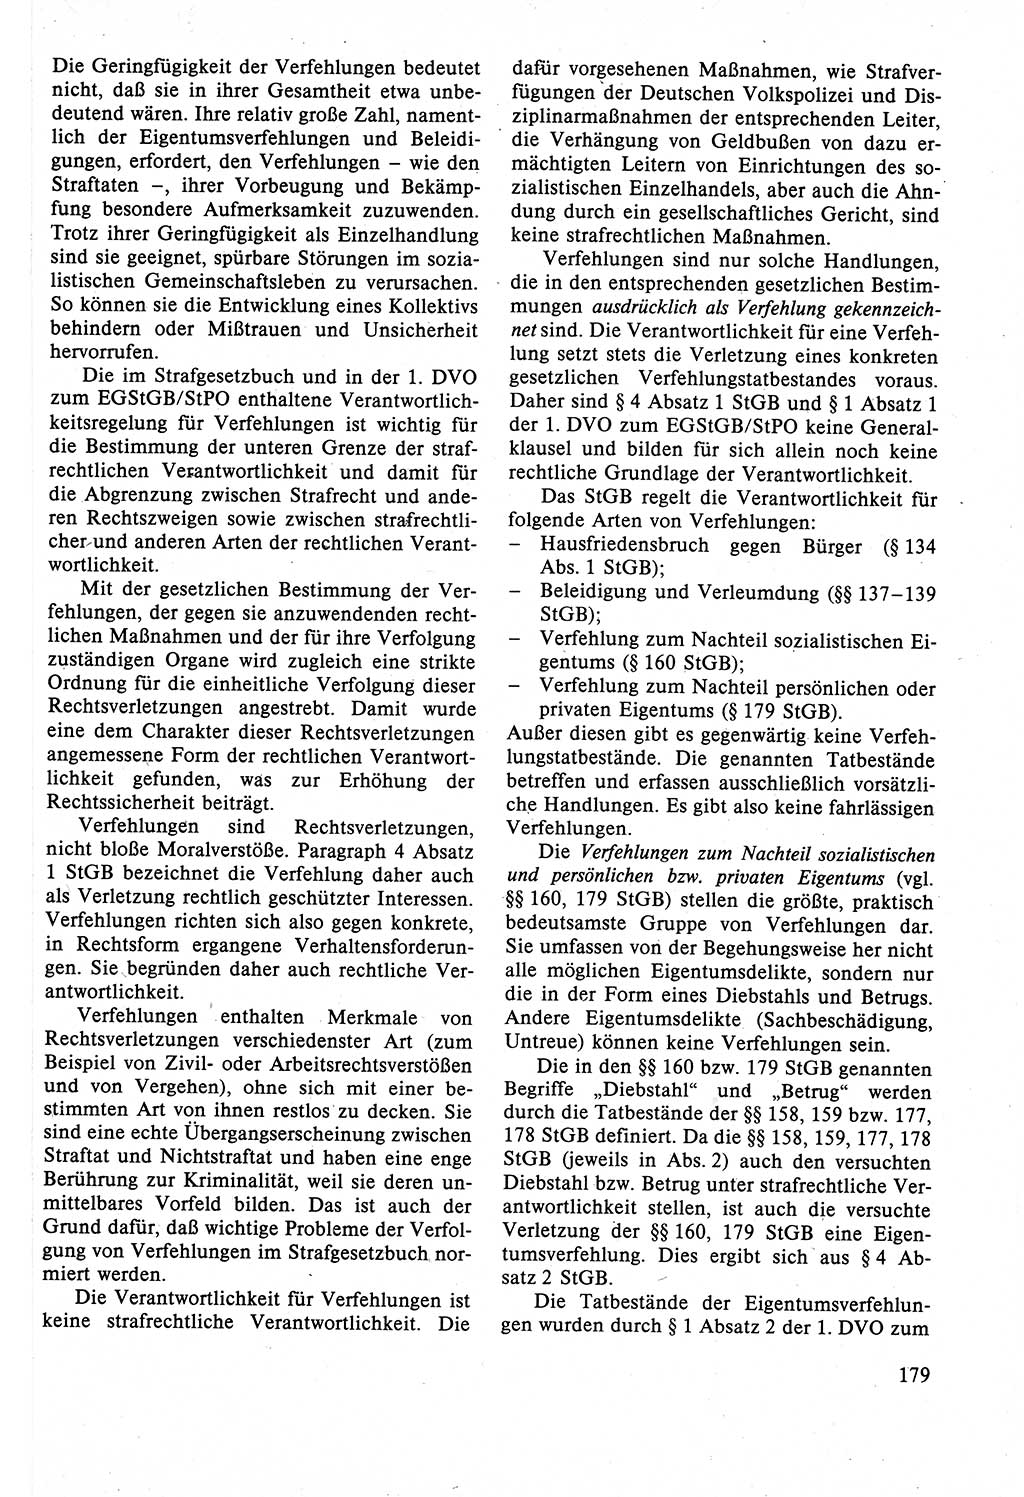 Strafrecht der DDR (Deutsche Demokratische Republik), Lehrbuch 1988, Seite 179 (Strafr. DDR Lb. 1988, S. 179)